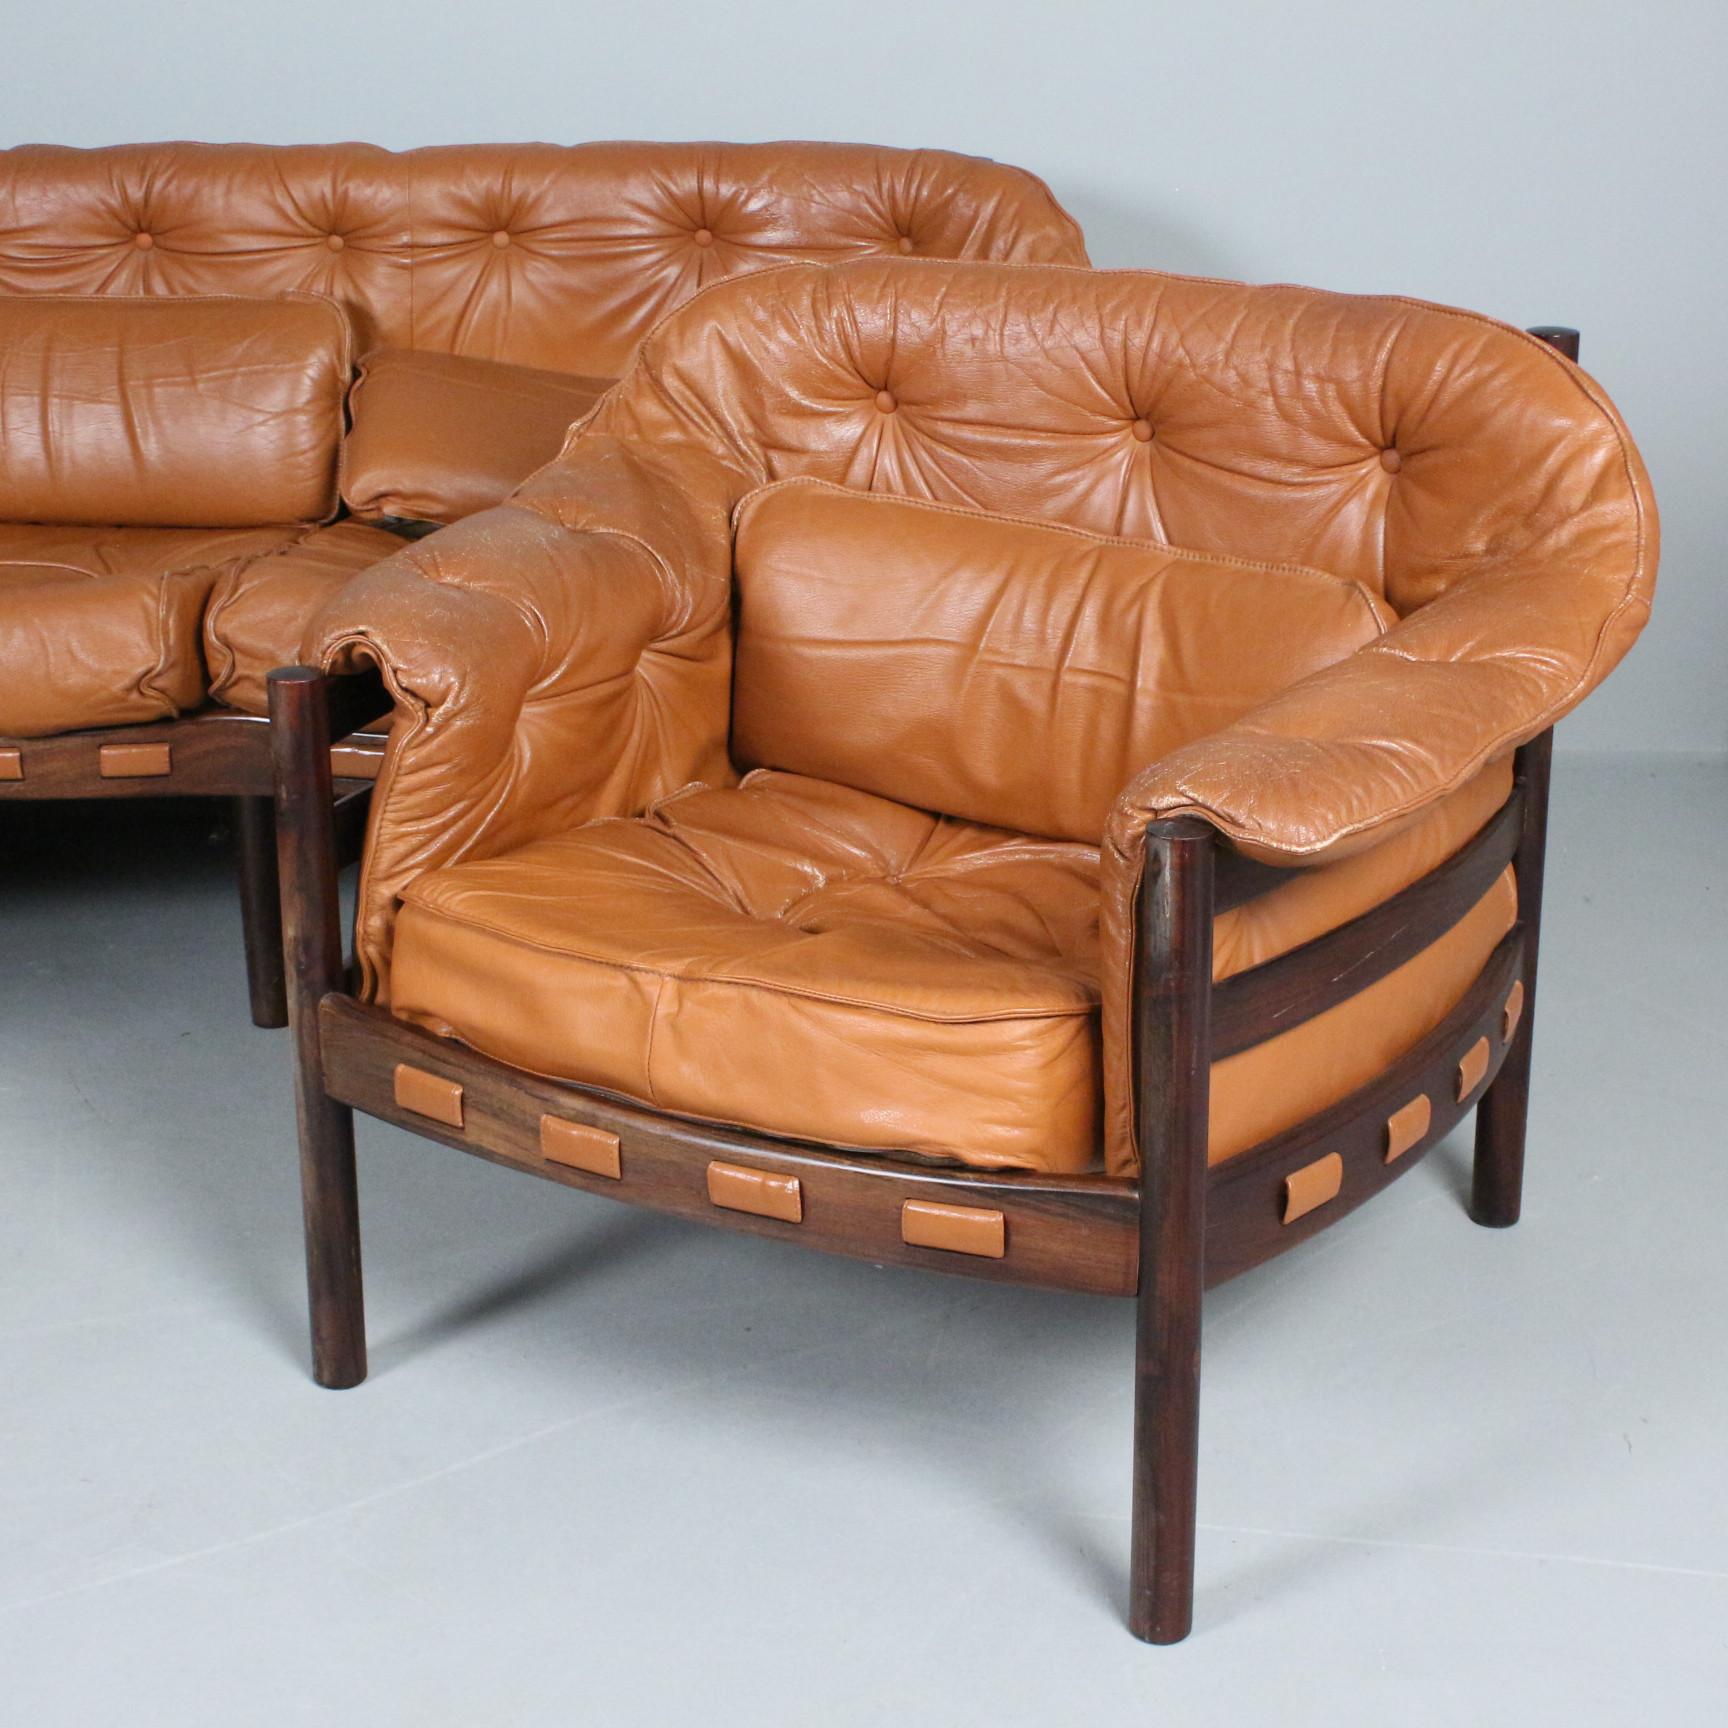 Arne Norells Sessel für Coja aus dunklem Holz  Holz und braunes Leder, hergestellt in Schweden Schweden um 1960
Guter Zustand
2 Sessel verfügbar Preis für 1 Sessel 
Auch ein passendes Sofa ist auf der Website verfügbar